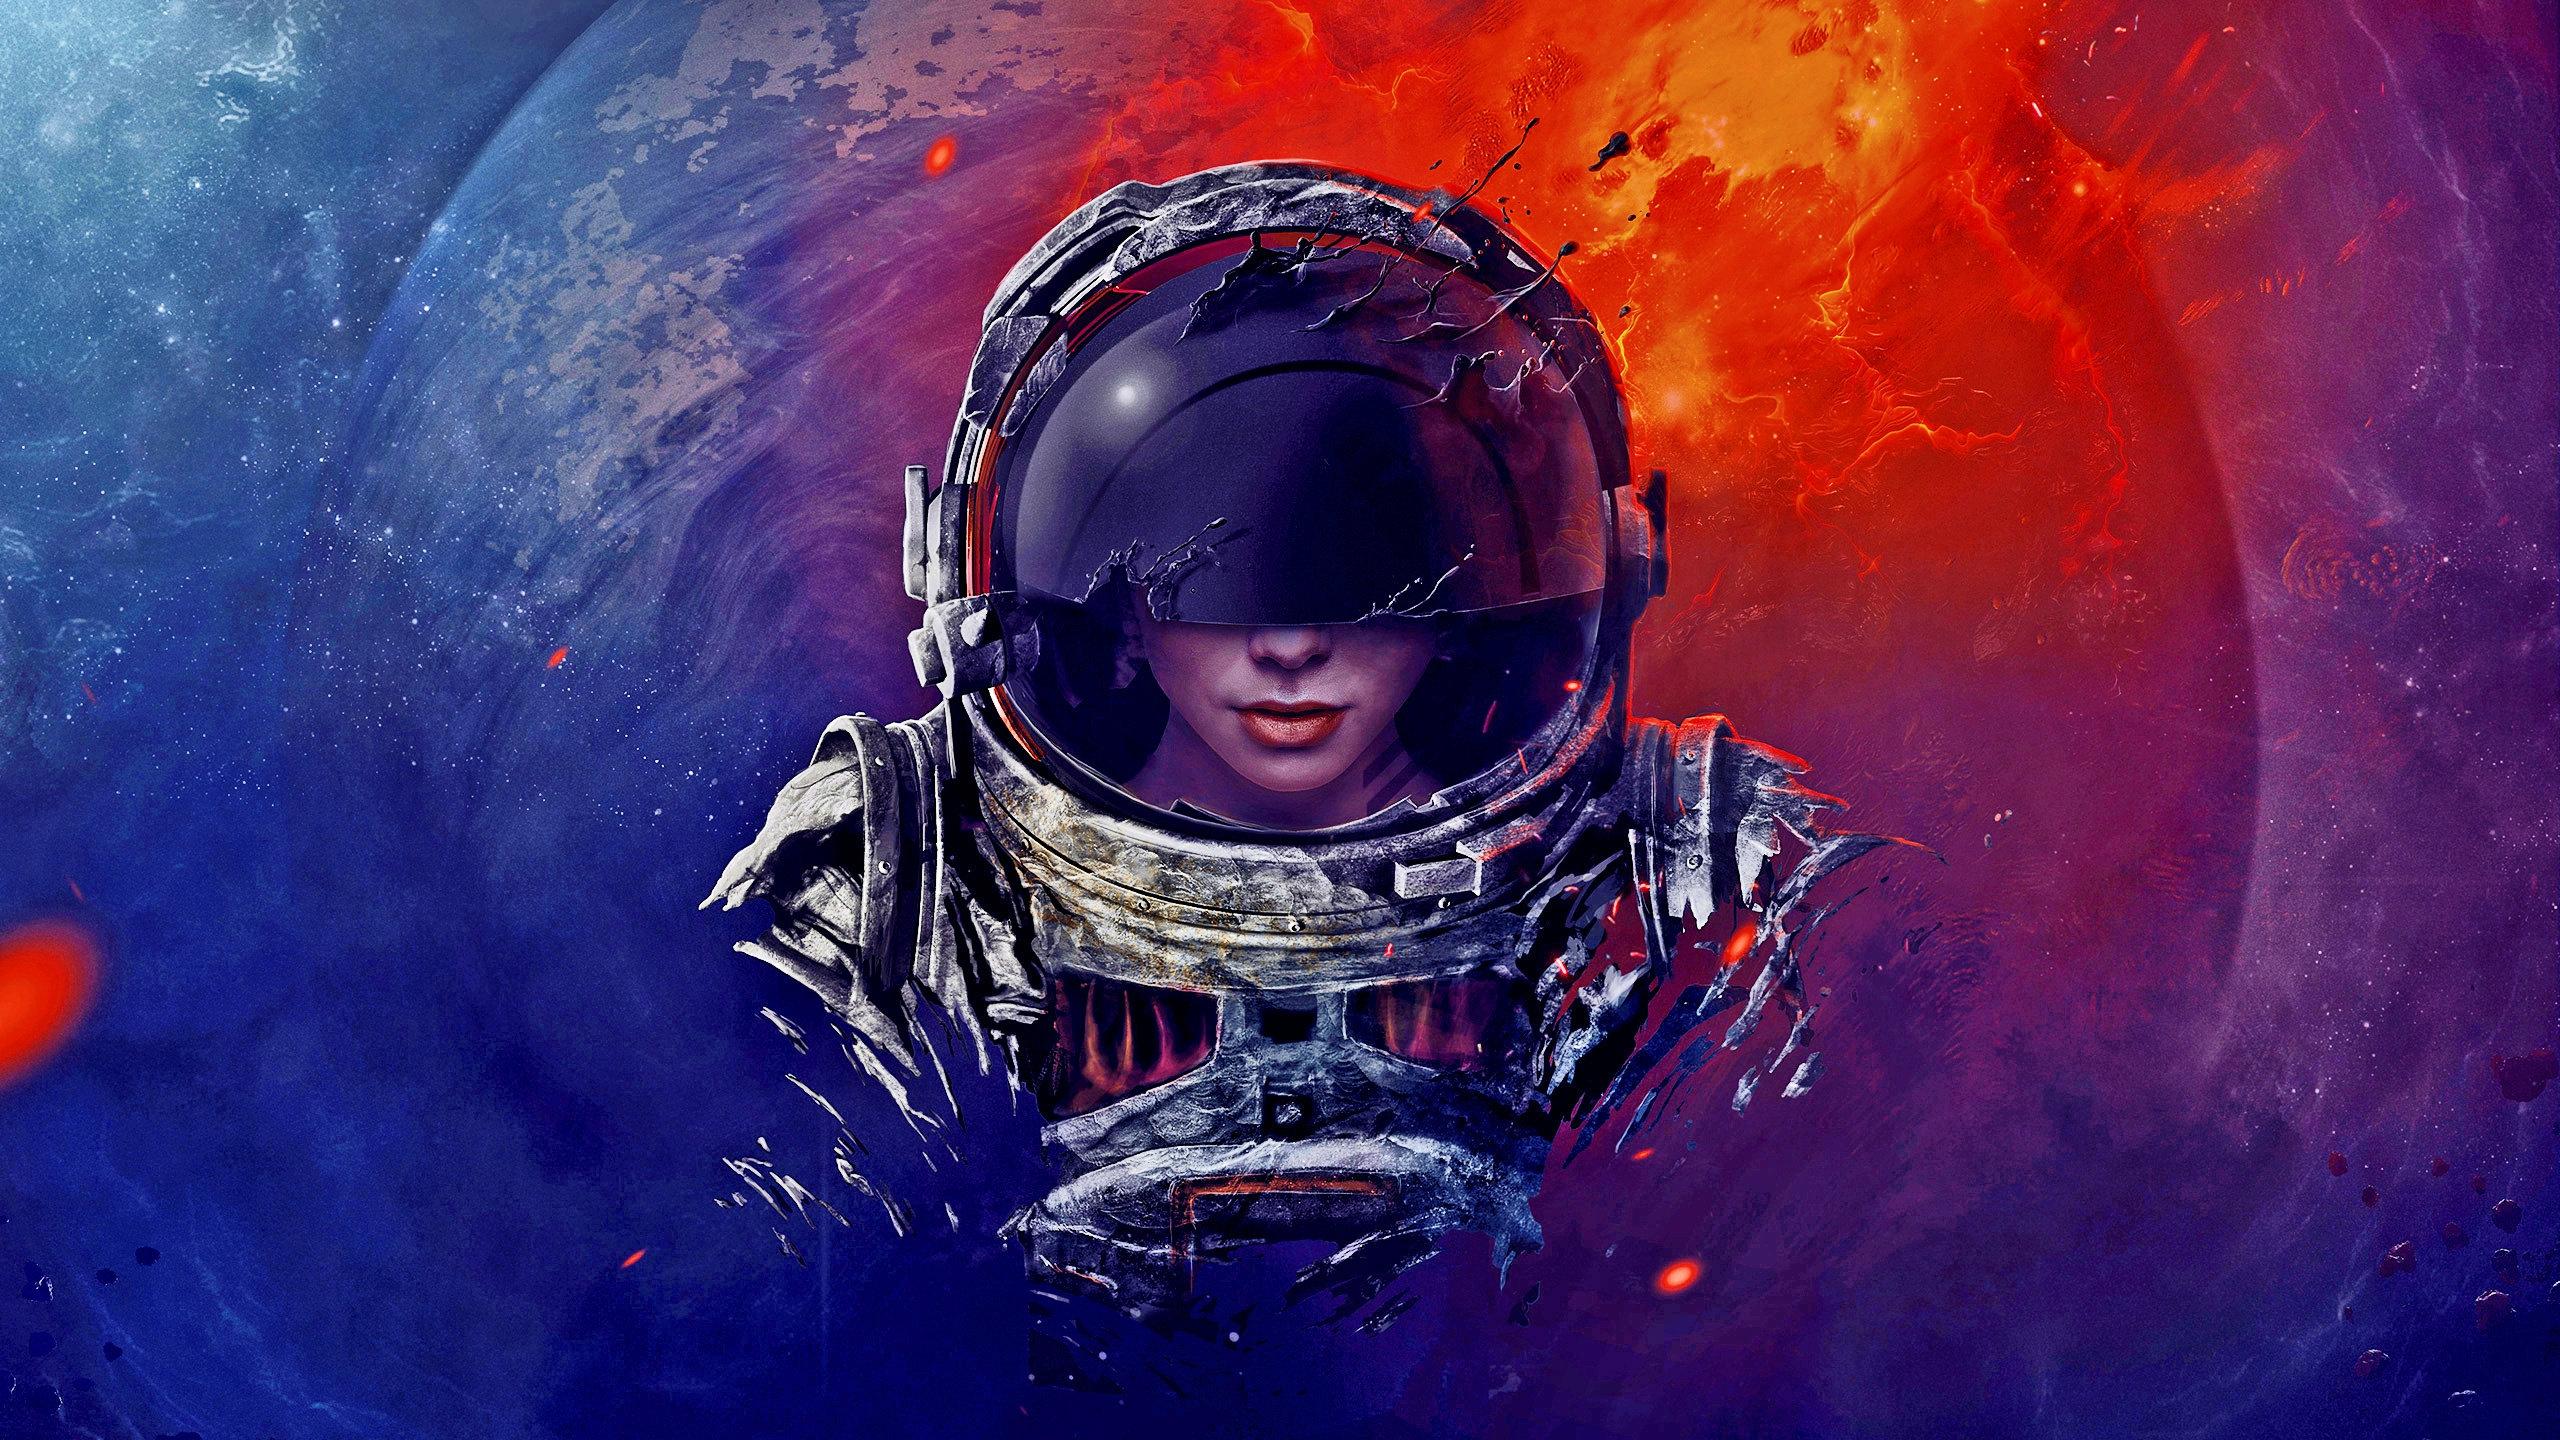 Neon Astronaut Wallpapers - Top Free Neon Astronaut Backgrounds